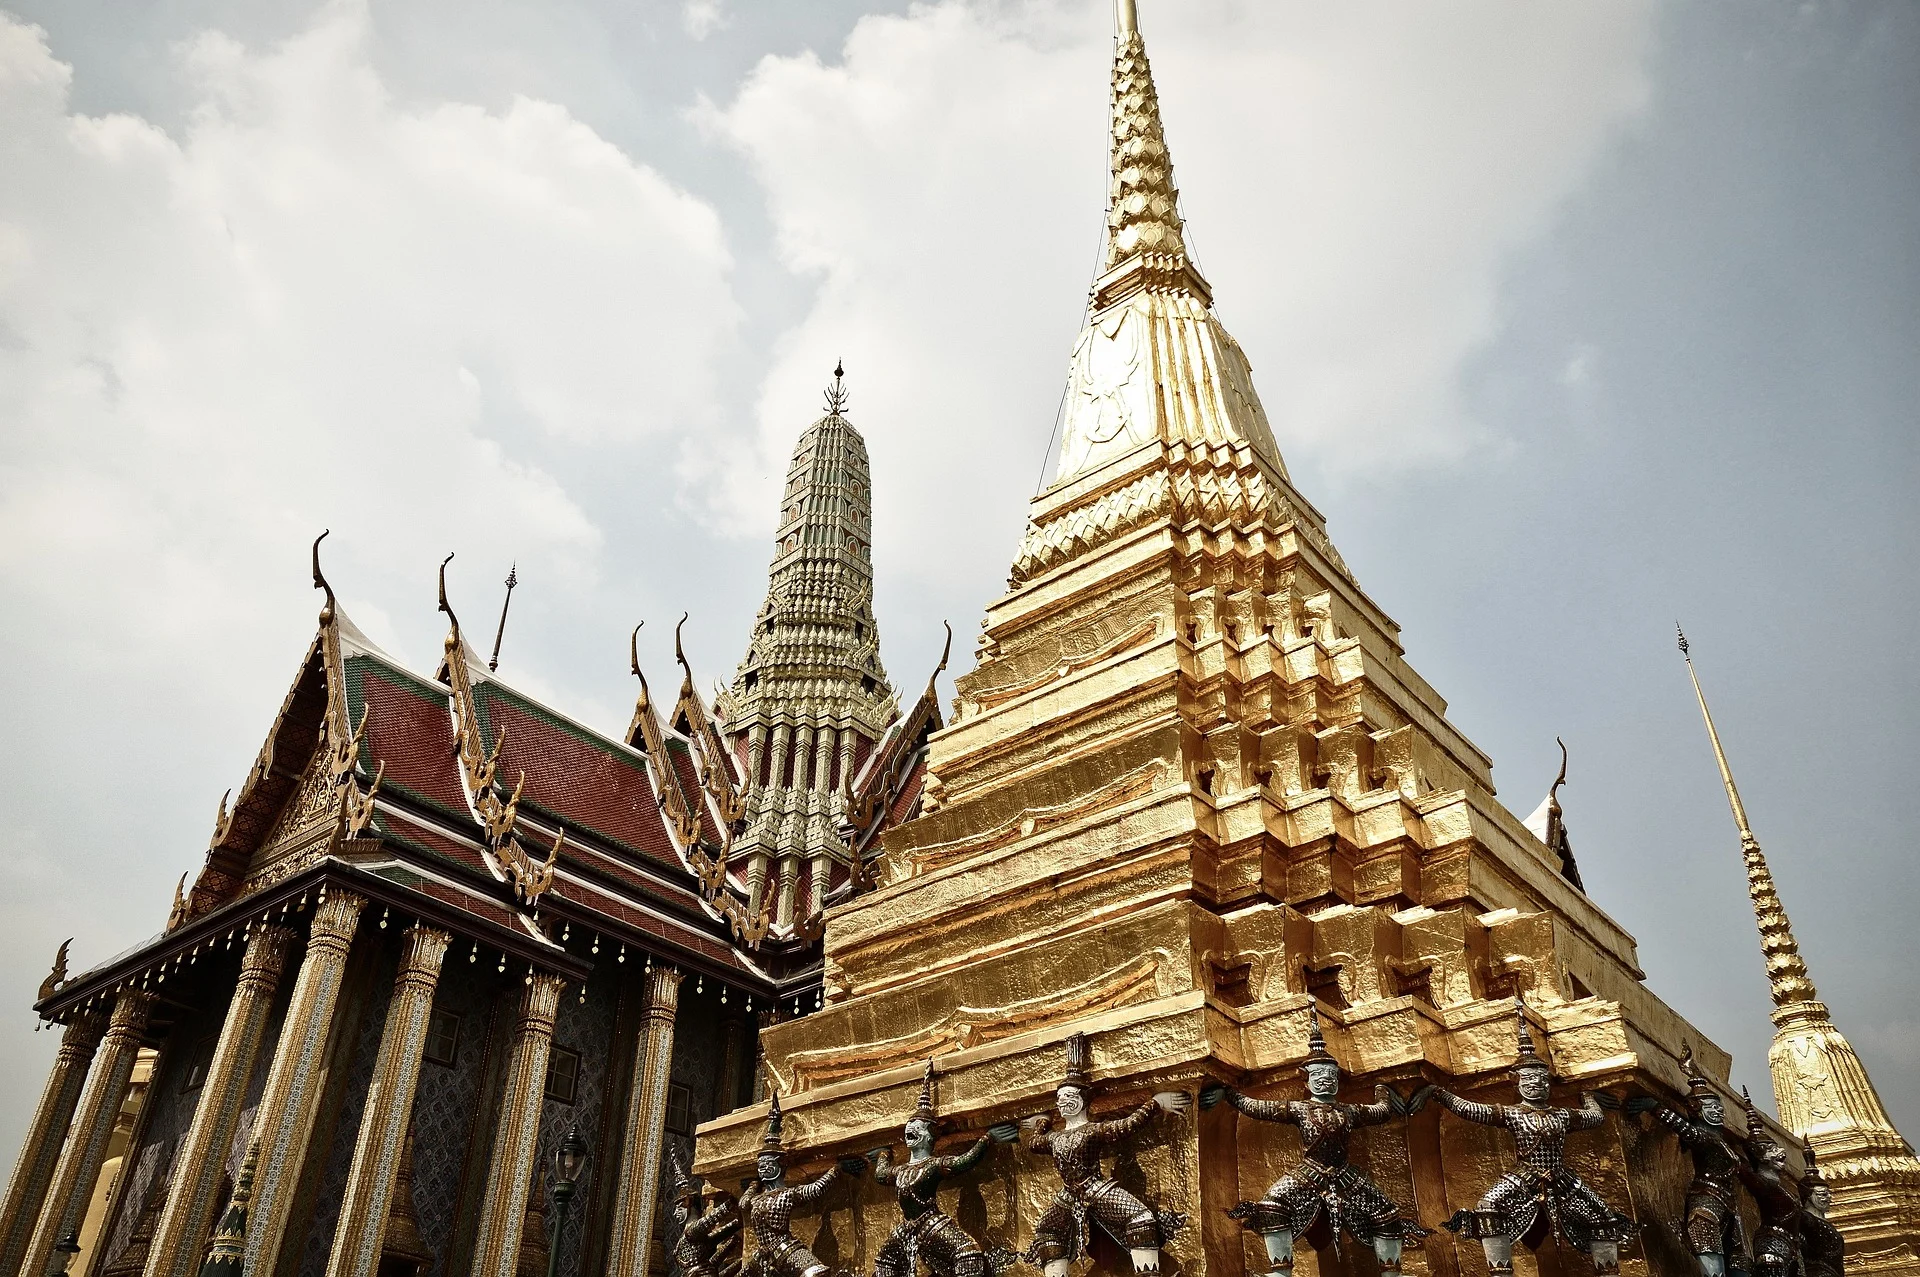 Bangkok ארמון המלך בבנגקוק